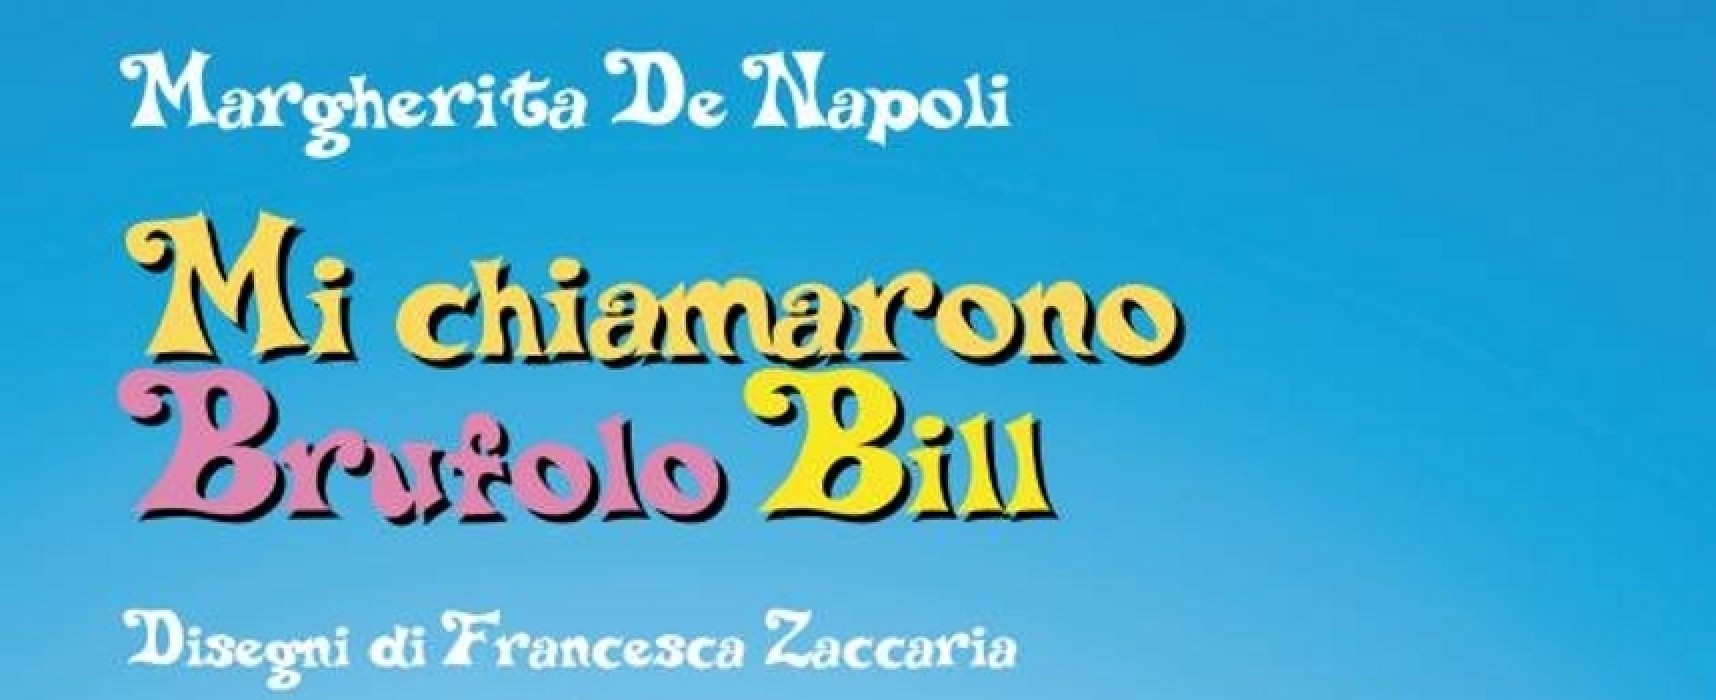 Margherita De Napoli presenta “Mi chiamarono Brufolo Bill” presso la cioccolateria Bon Ton